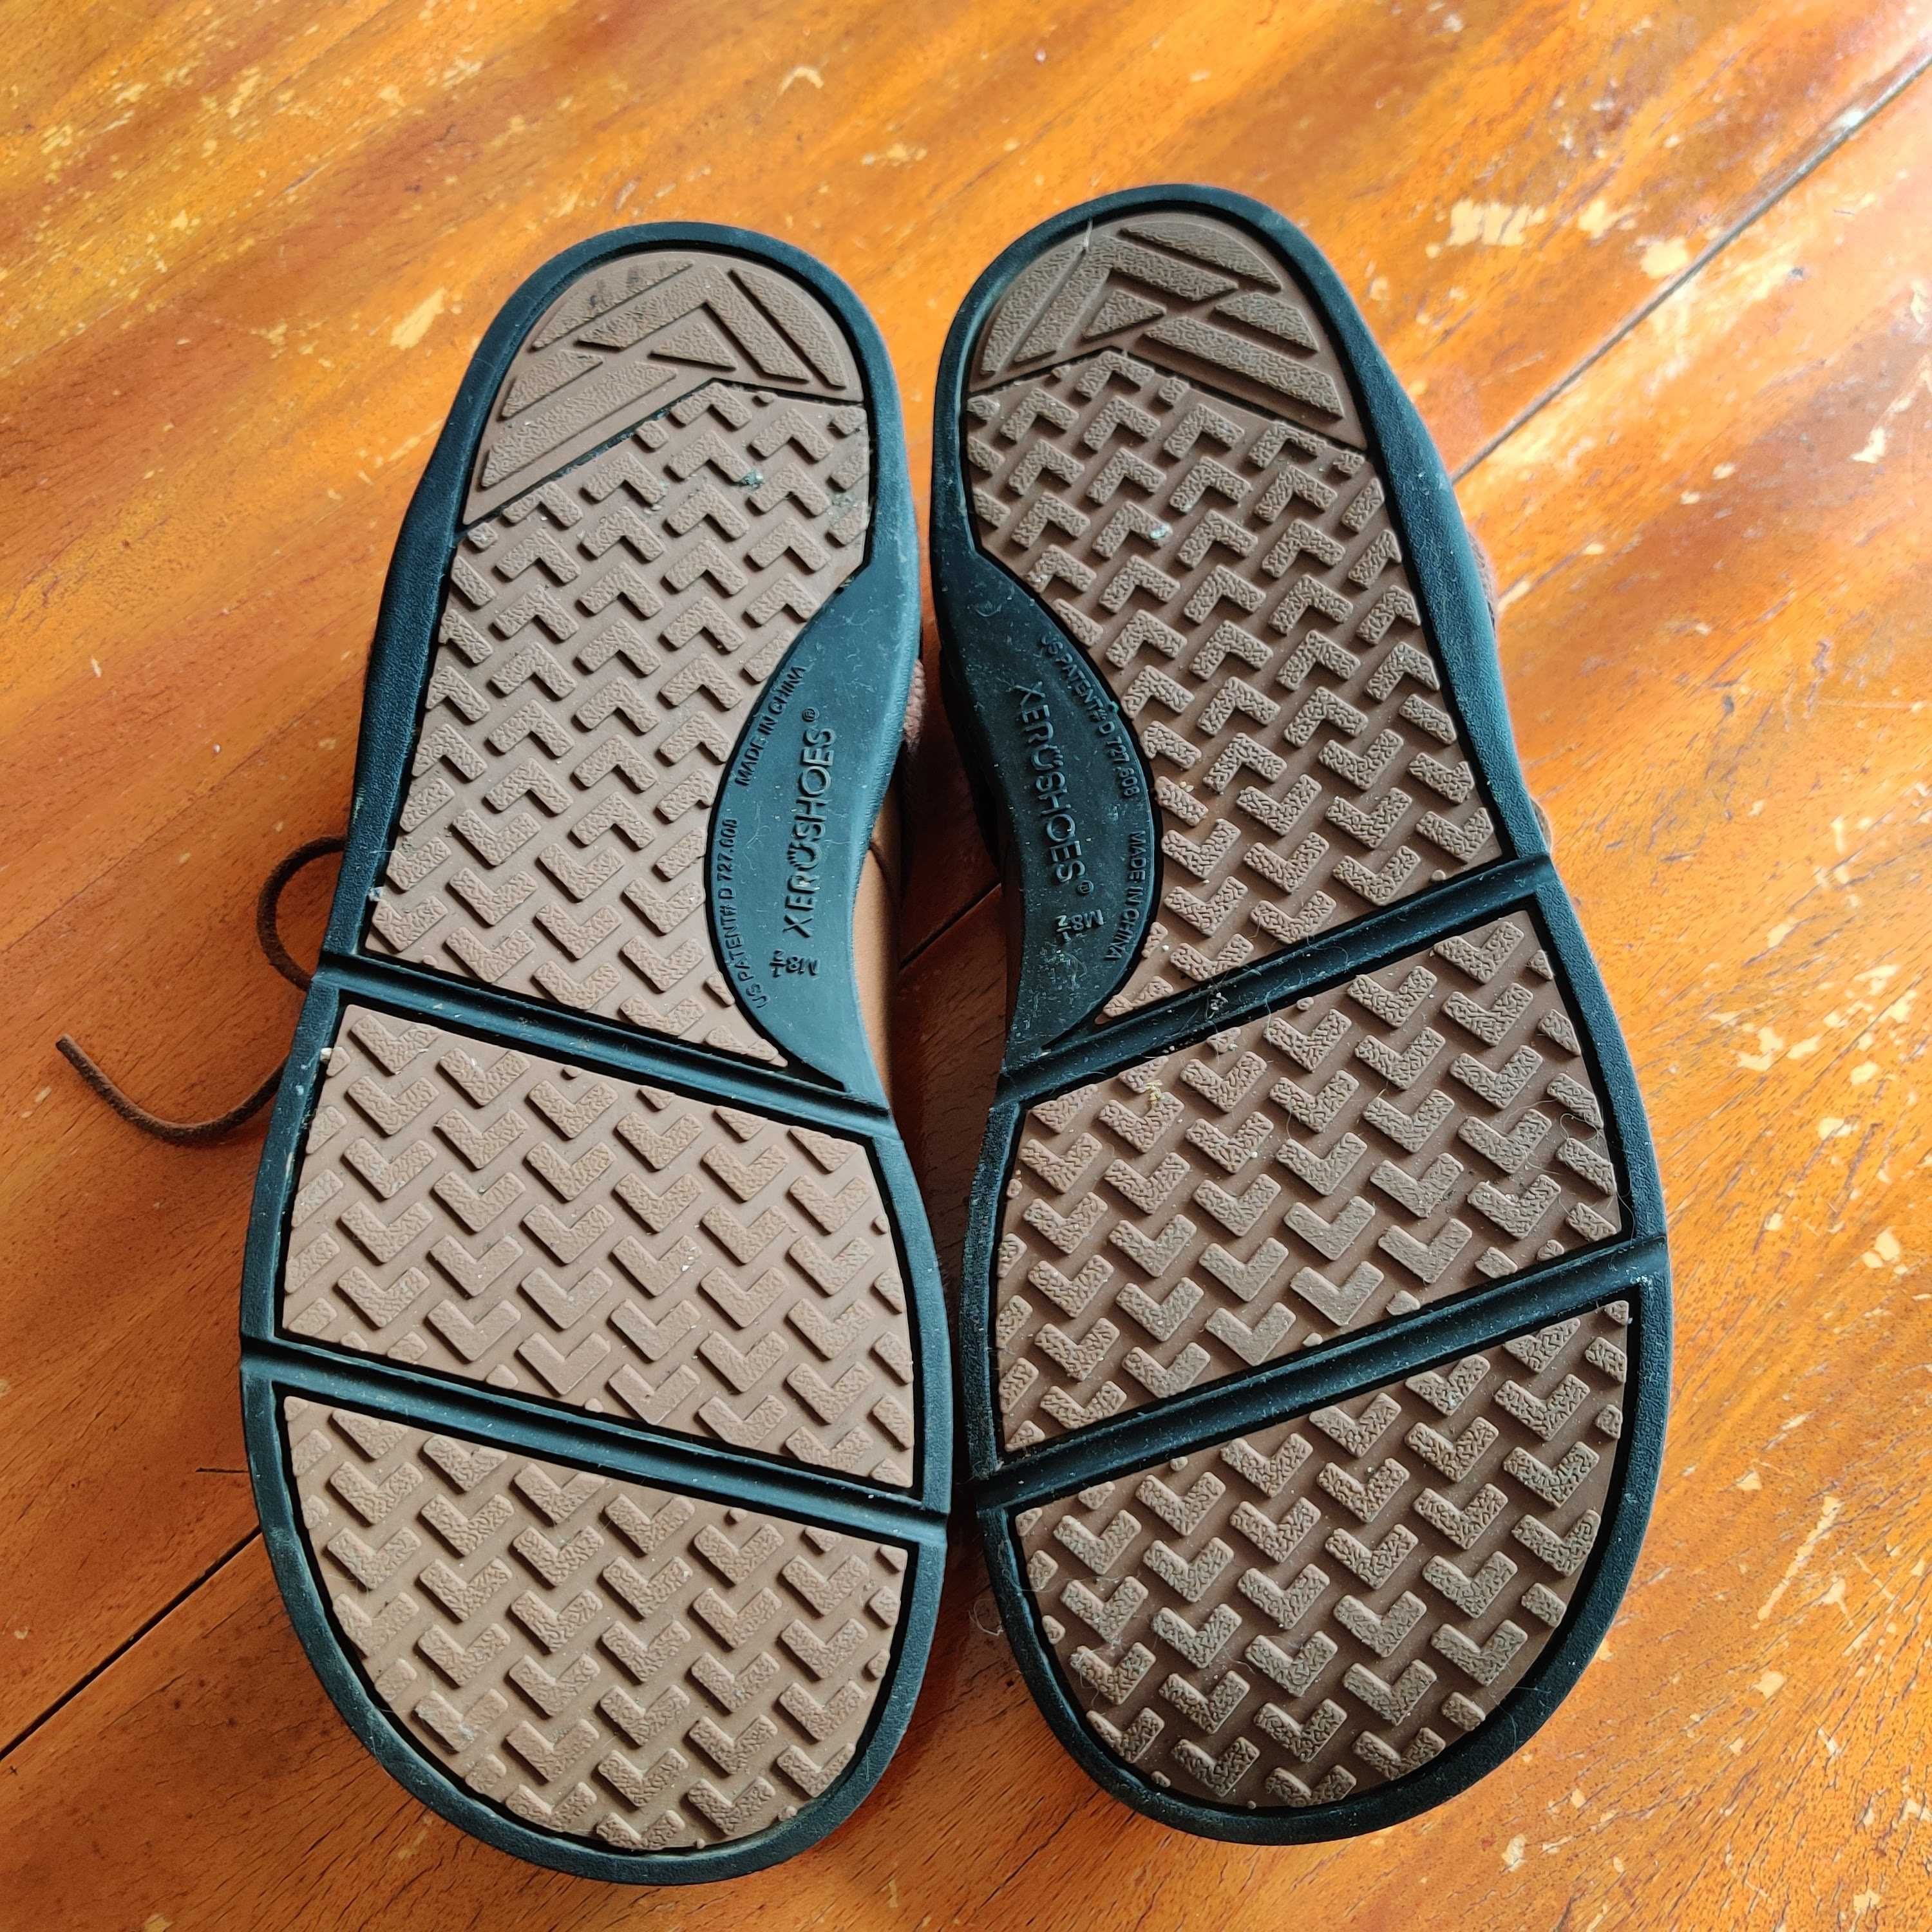 Мъжки barefoot обувки Xero Shoes Alston, р-р 41.5